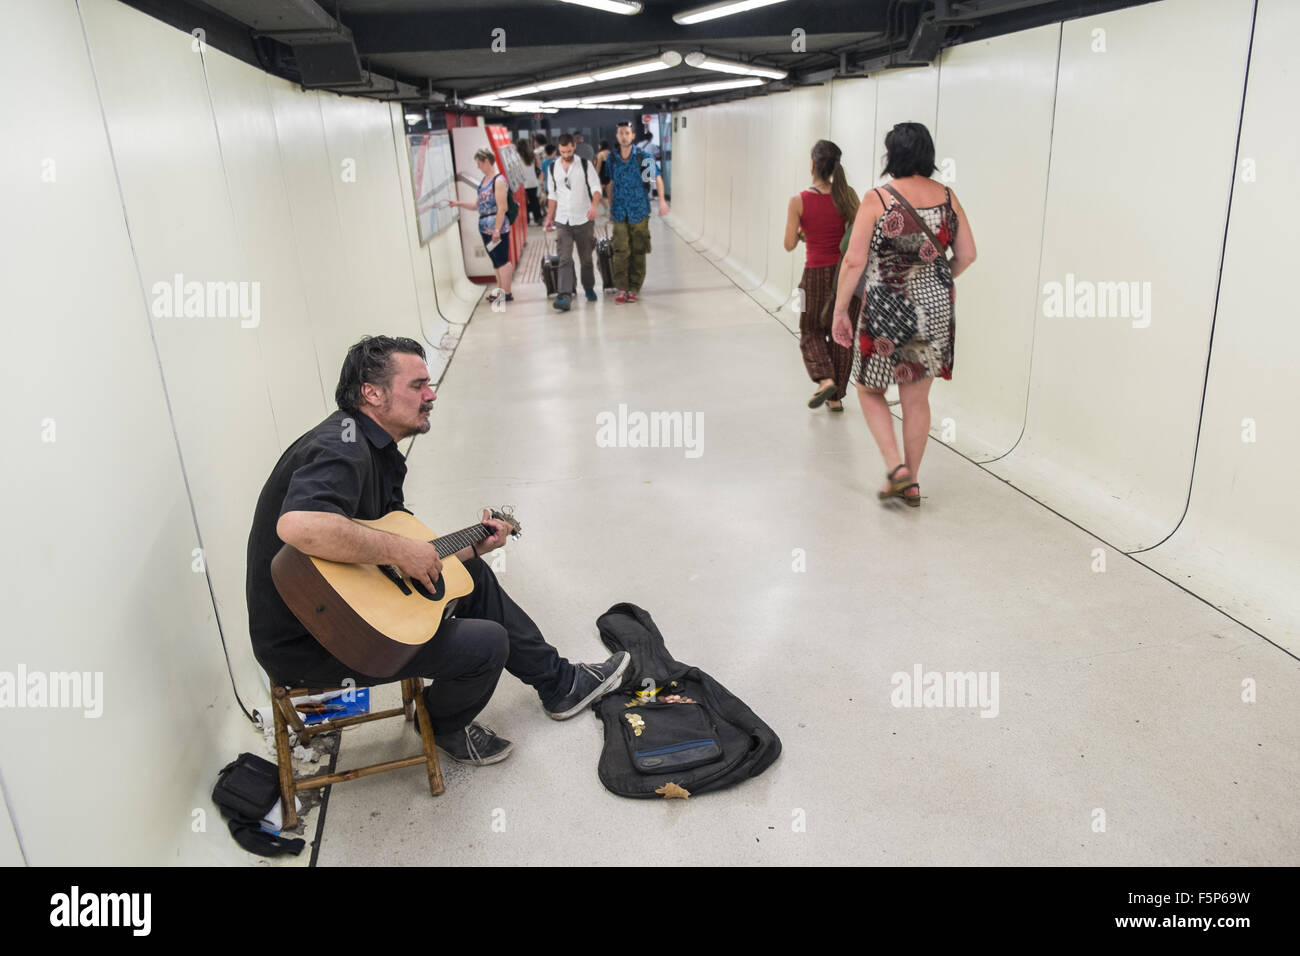 Guitariste chanteur,musicien,arts au subway busker gare. Catalogne Barcelone,Espagne,, Banque D'Images